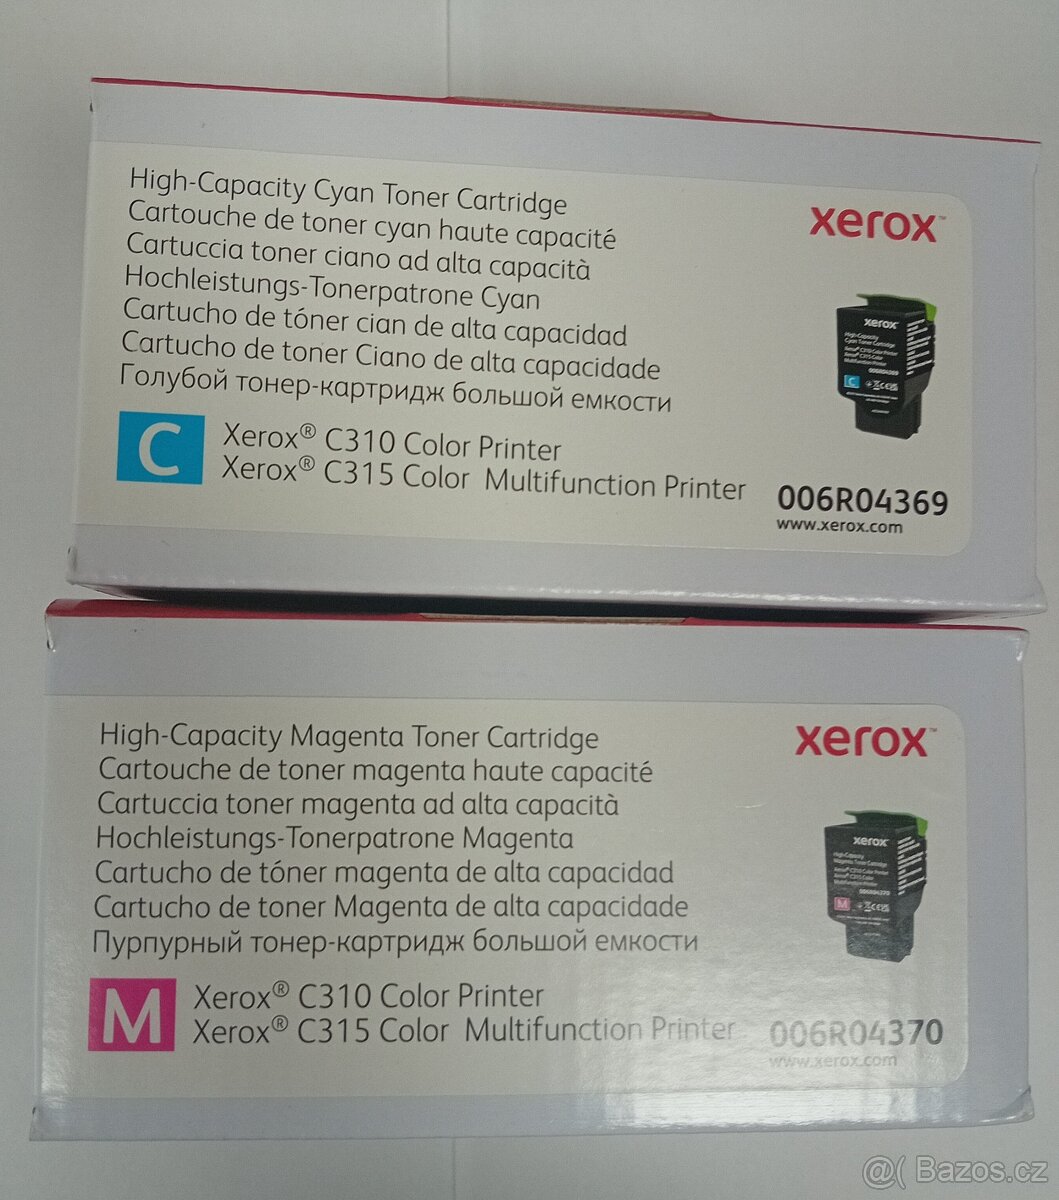 Xerox cartridge